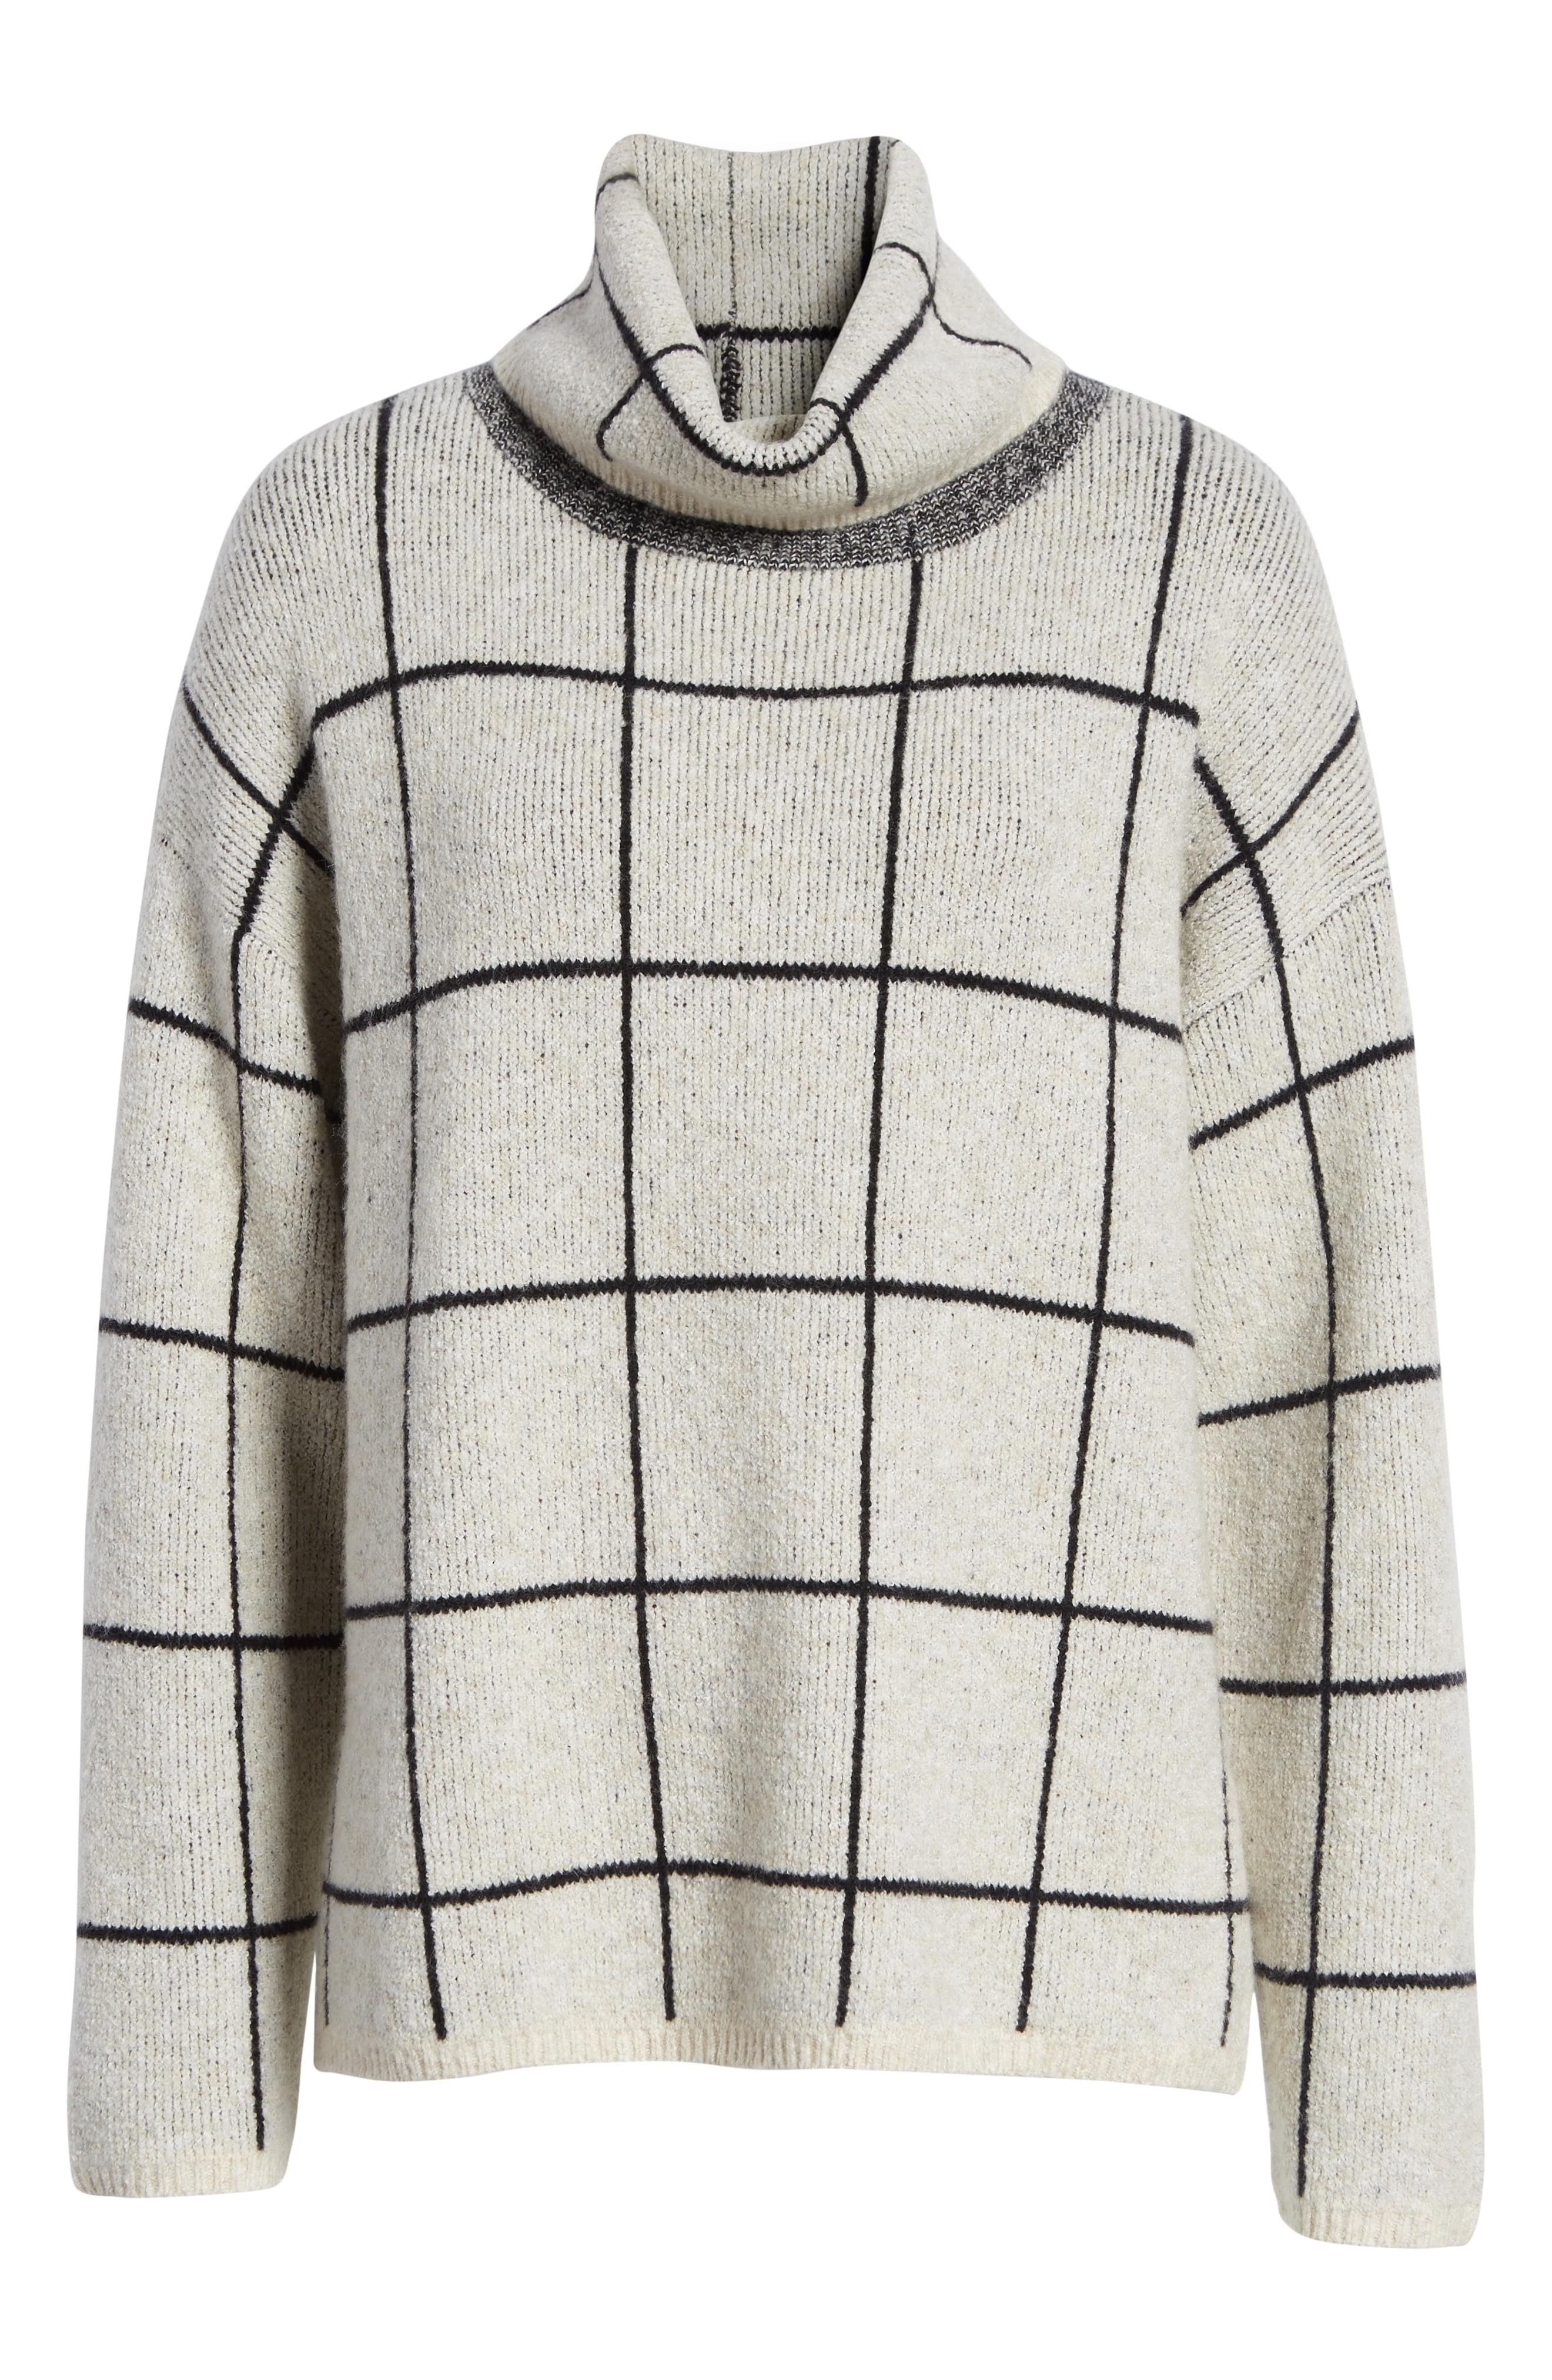 Madewell Wool Windowpane Turtleneck Sweater in Heather Oak (Gray) - Lyst